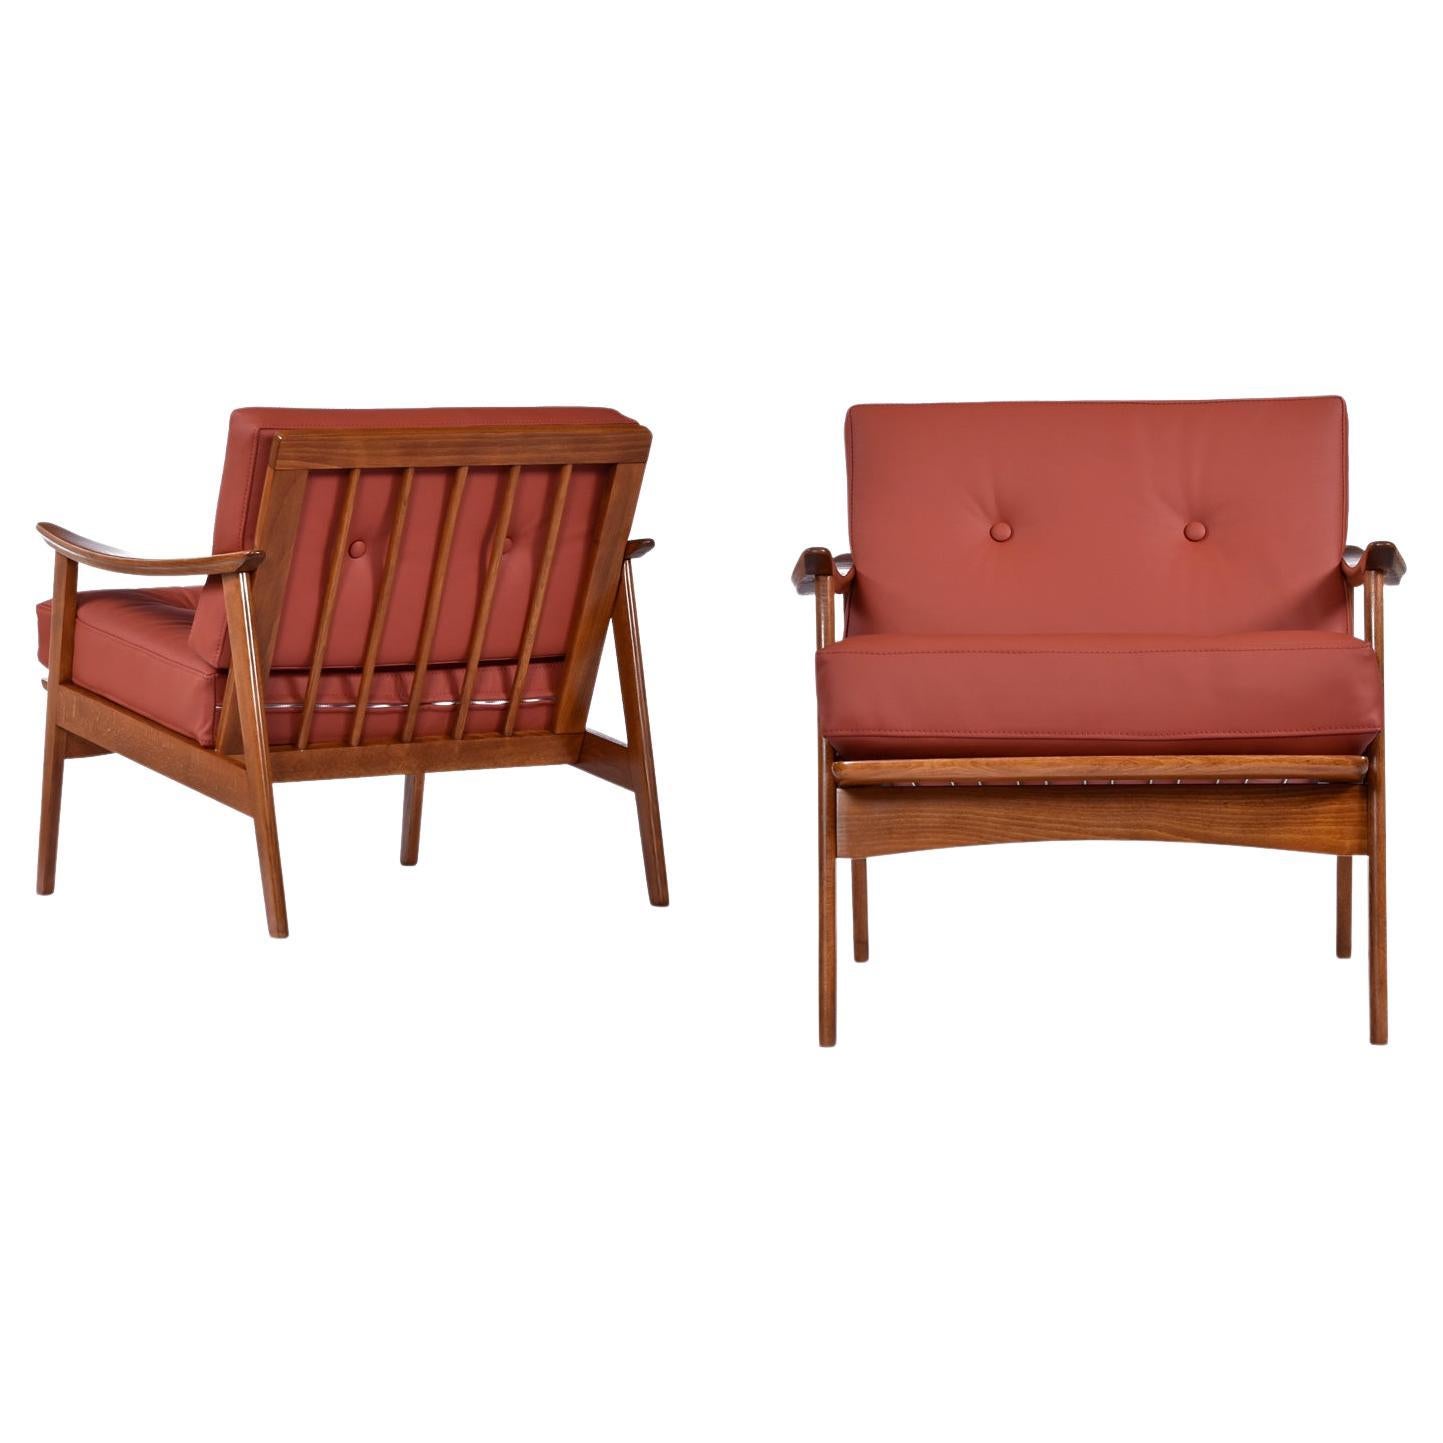 Hübsches Paar Sessel aus massivem Buchenholz, Mid-Century Modern, hergestellt in Skandinavien. Diese klassischen, zeitlosen Sessel wurden aufgefrischt und mit einer komplett neuen Polsterung aus bordeaux-cognacfarbenem Leder und hübschen Knöpfen